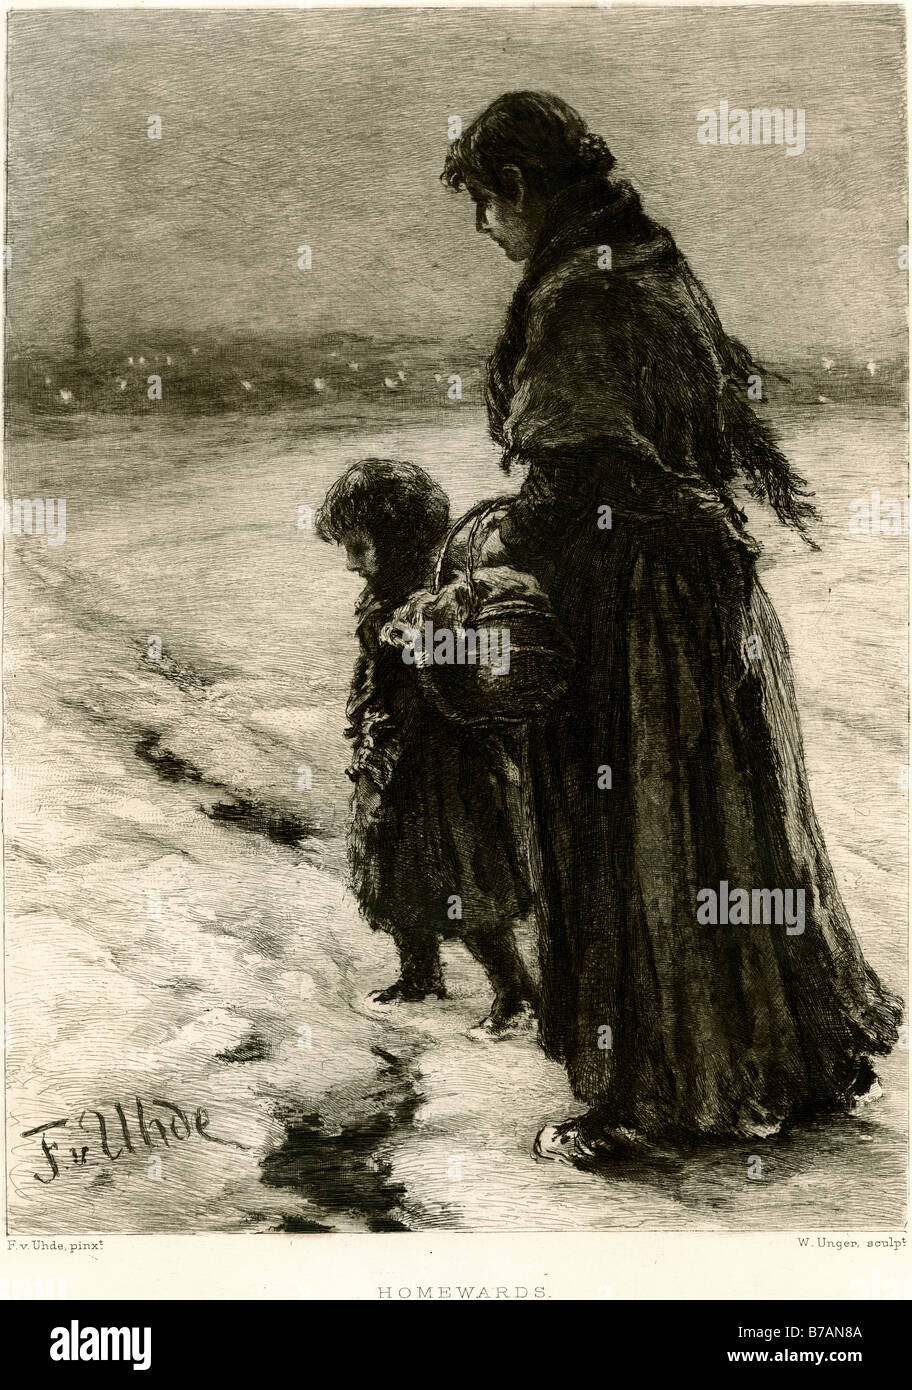 Fuß nach Hause reisen Schnee kalt Reise nach Hause Kind Mutter weg Winter Eis Pelz Mantel Frau außerhalb zu Fuß Stockfoto